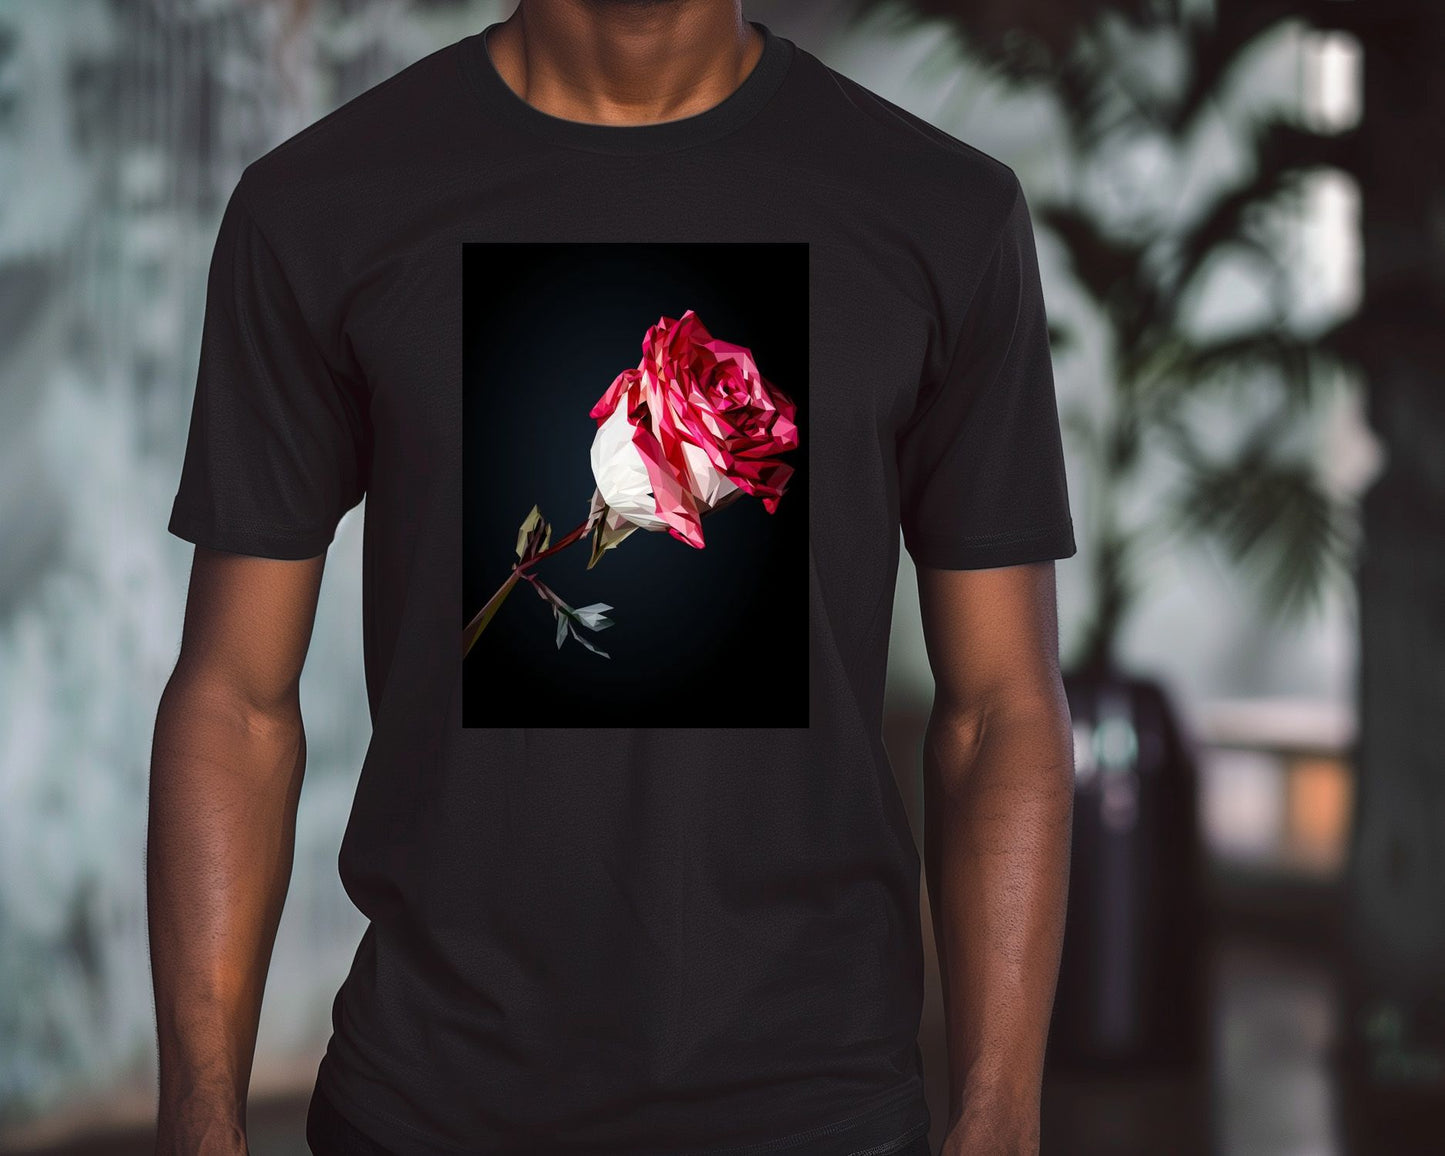 rose flower - @Artnesia